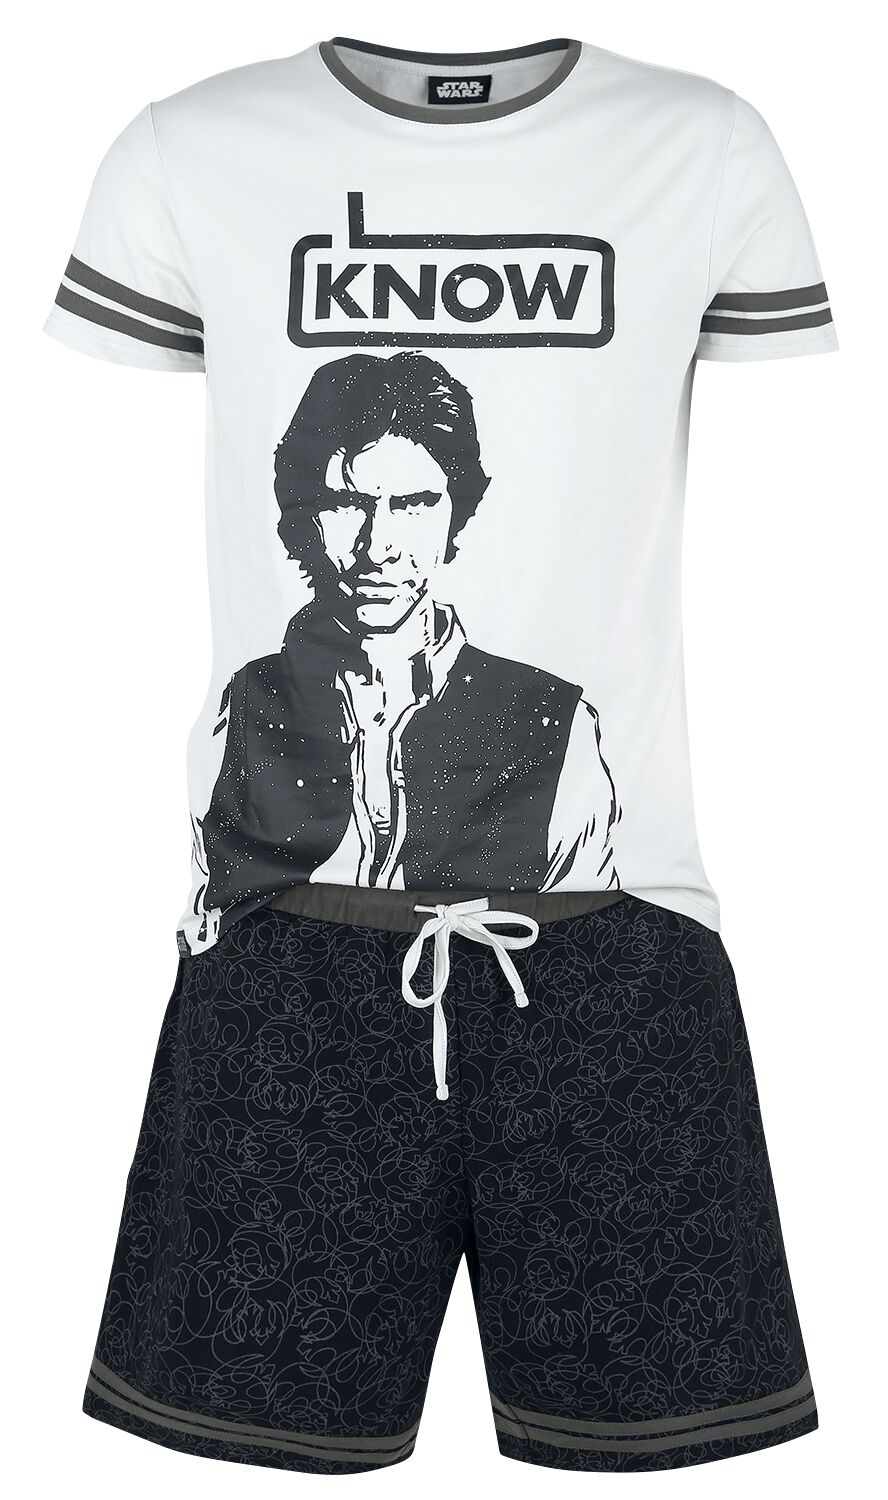 Star Wars Schlafanzug - Han Solo - I Know - S bis XXL - für Männer - Größe S - grau/schwarz  - EMP exklusives Merchandise!